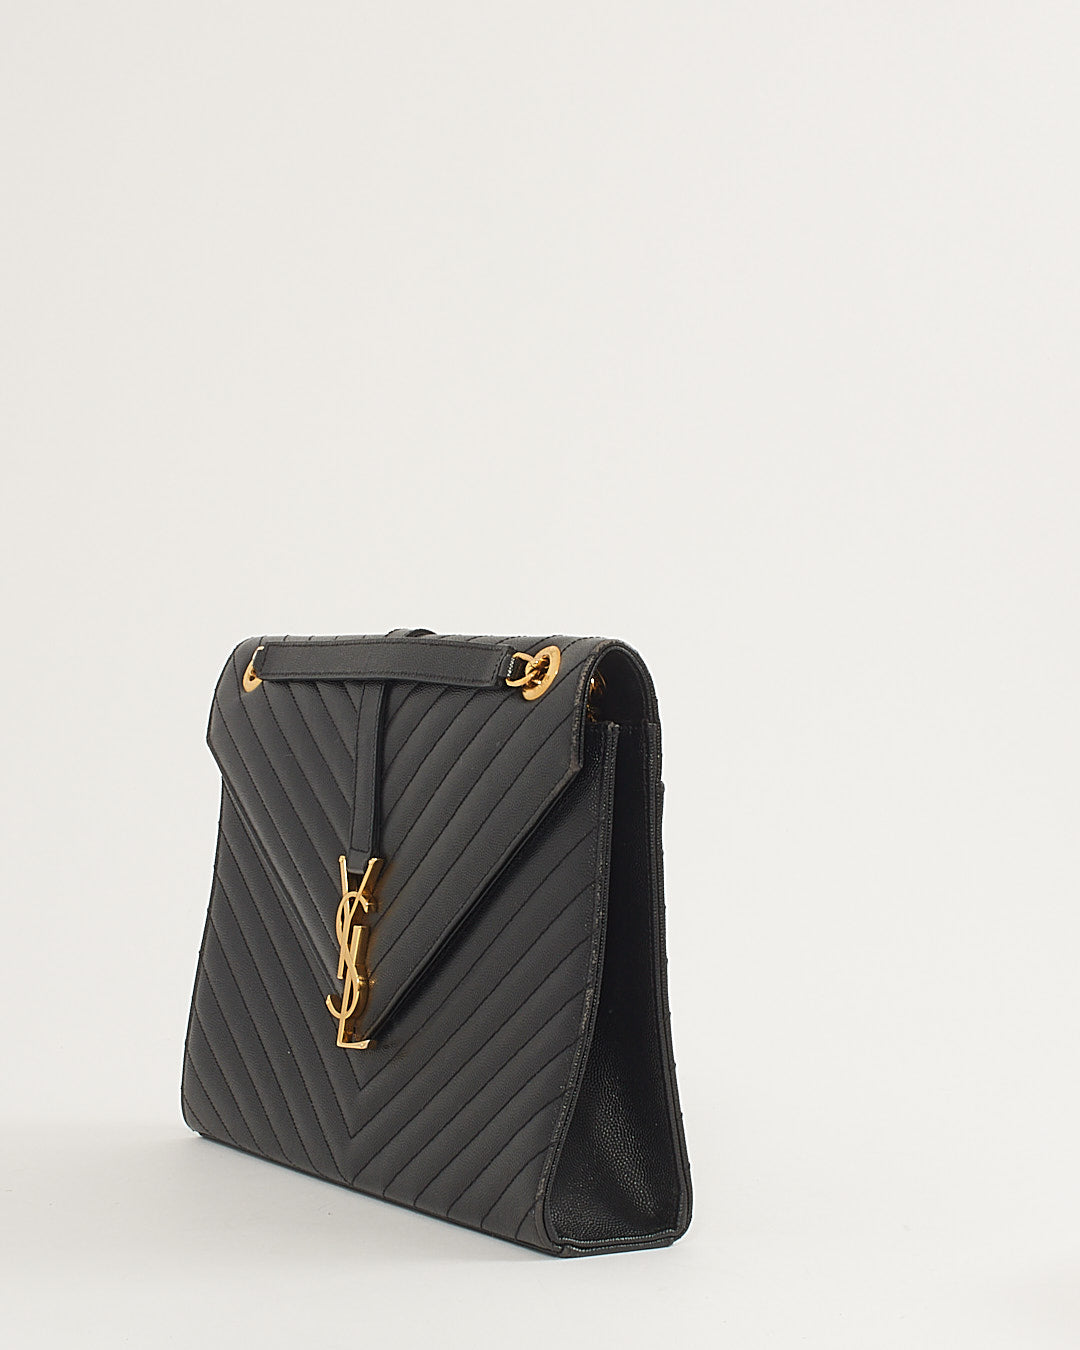 Saint Laurent Black Grained Leather Large Envelope Flap Bag